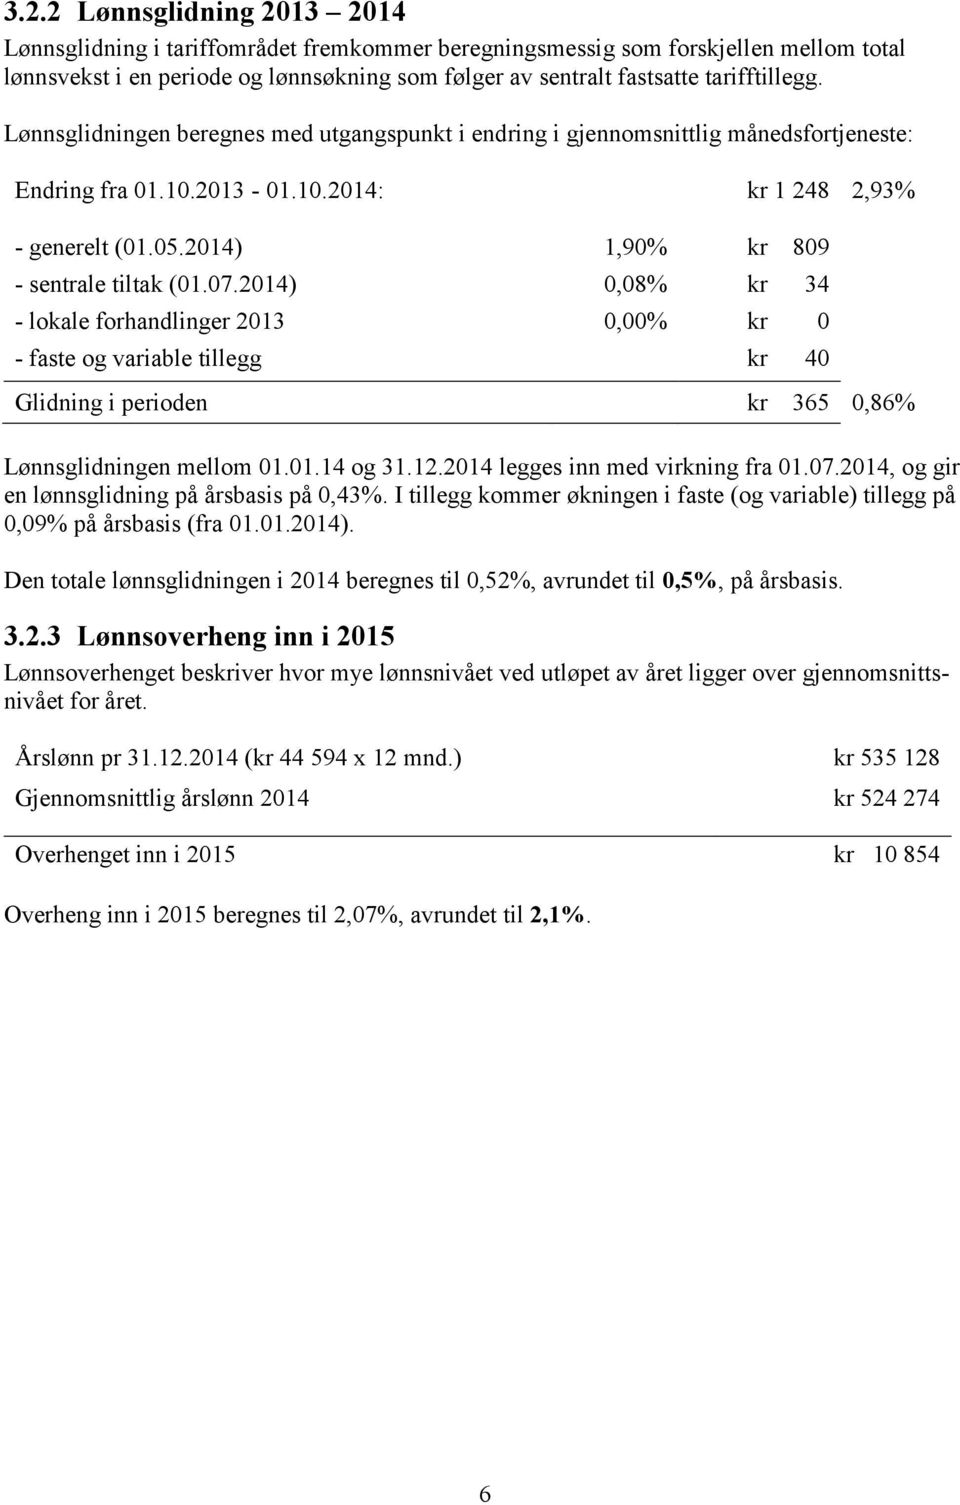 2014) 1,90% kr 809 - sentrale tiltak (01.07.2014) 0,08% kr 34 - lokale forhandlinger 2013 0,00% kr 0 - faste og variable tillegg kr 40 Glidning i perioden kr 365 0,86% Lønnsglidningen mellom 01.01.14 og 31.